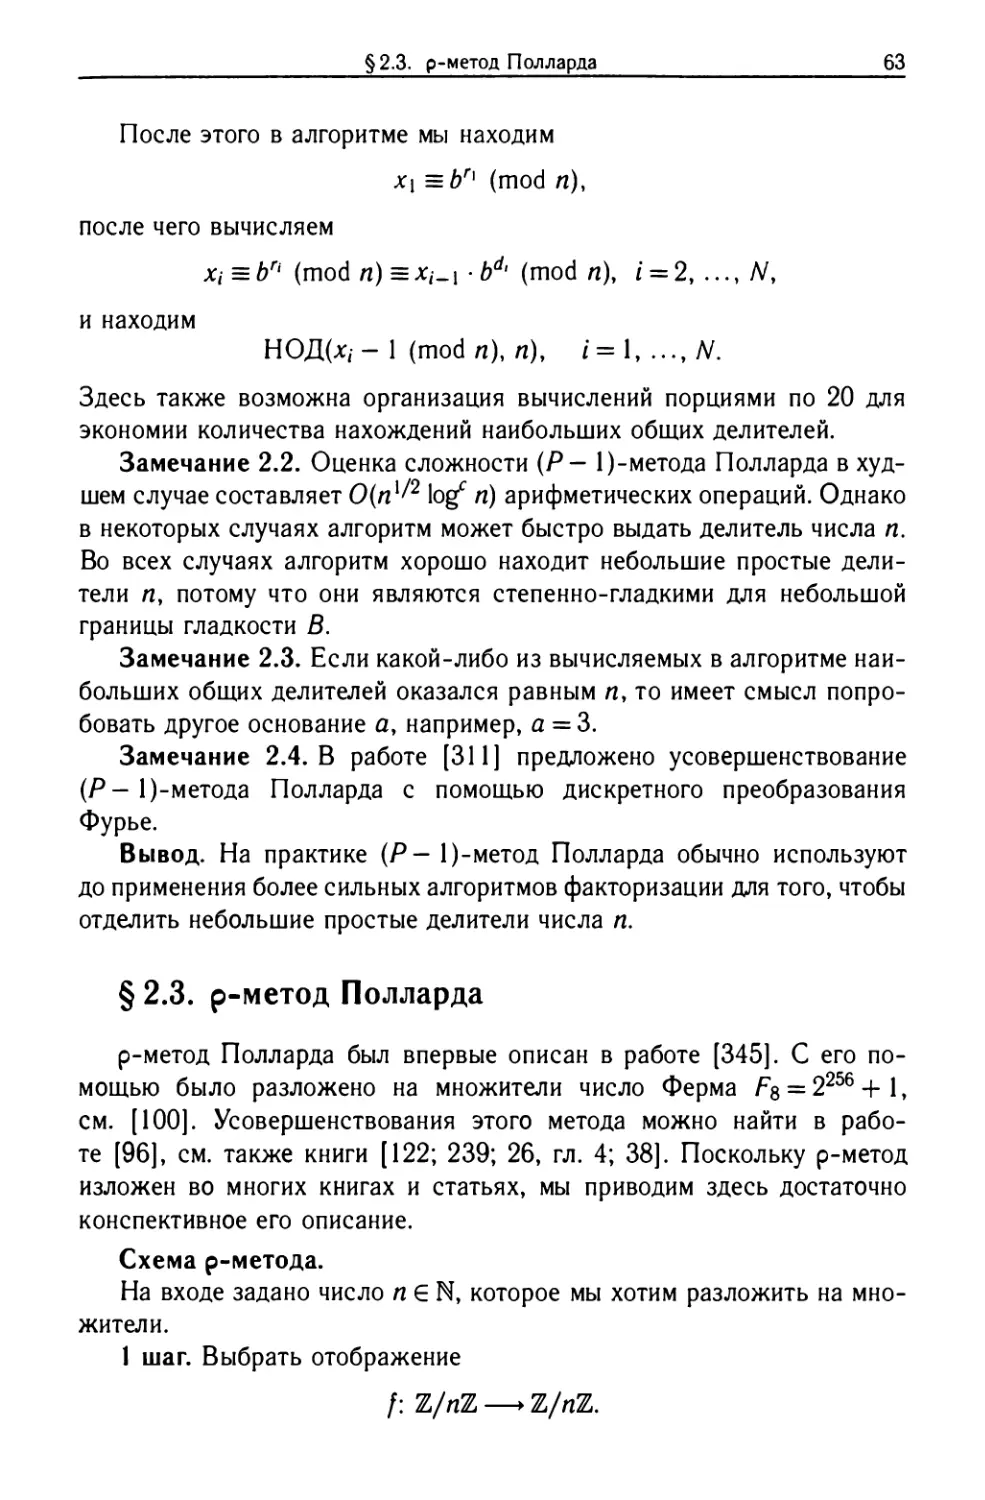 §2.3. ρ-метод Полларда